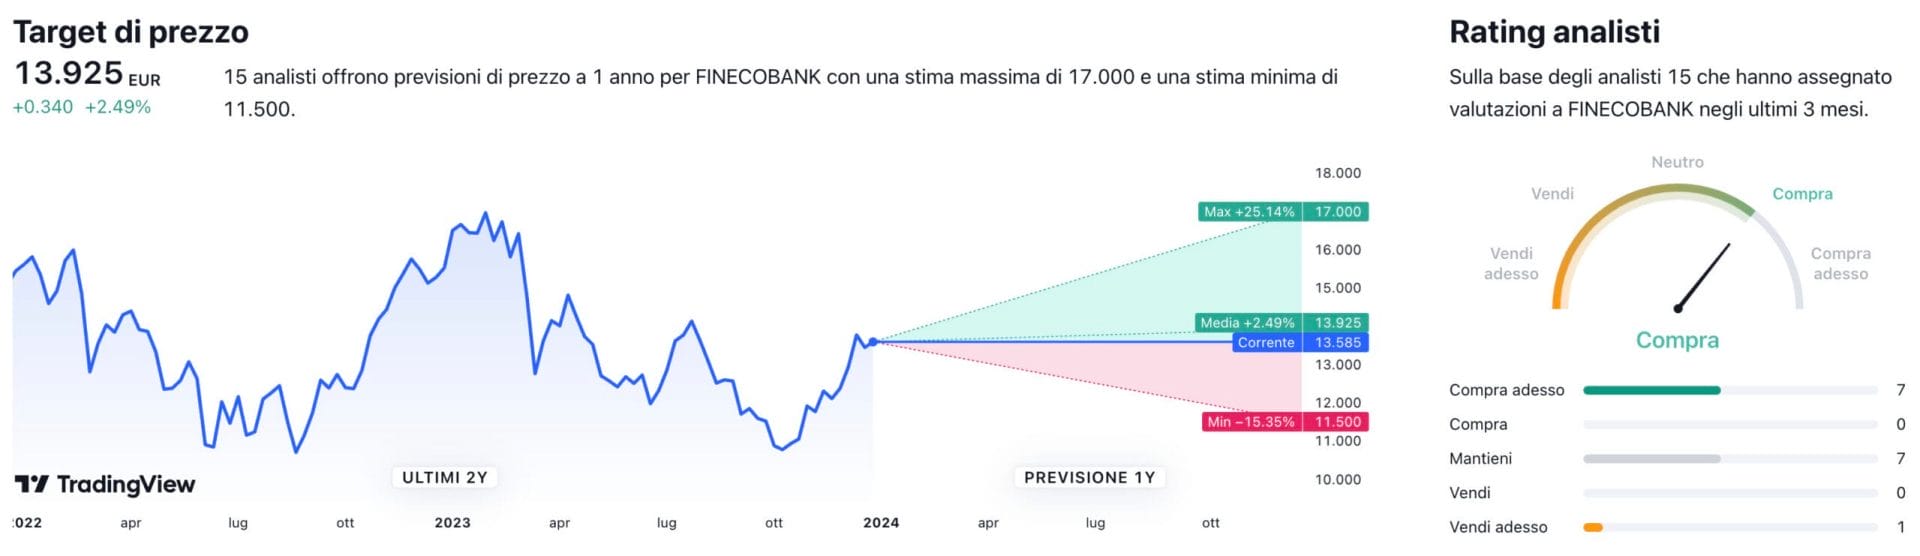 Target di prezzo a un anno e raccomandazioni degli analisti per il titolo FinecoBank